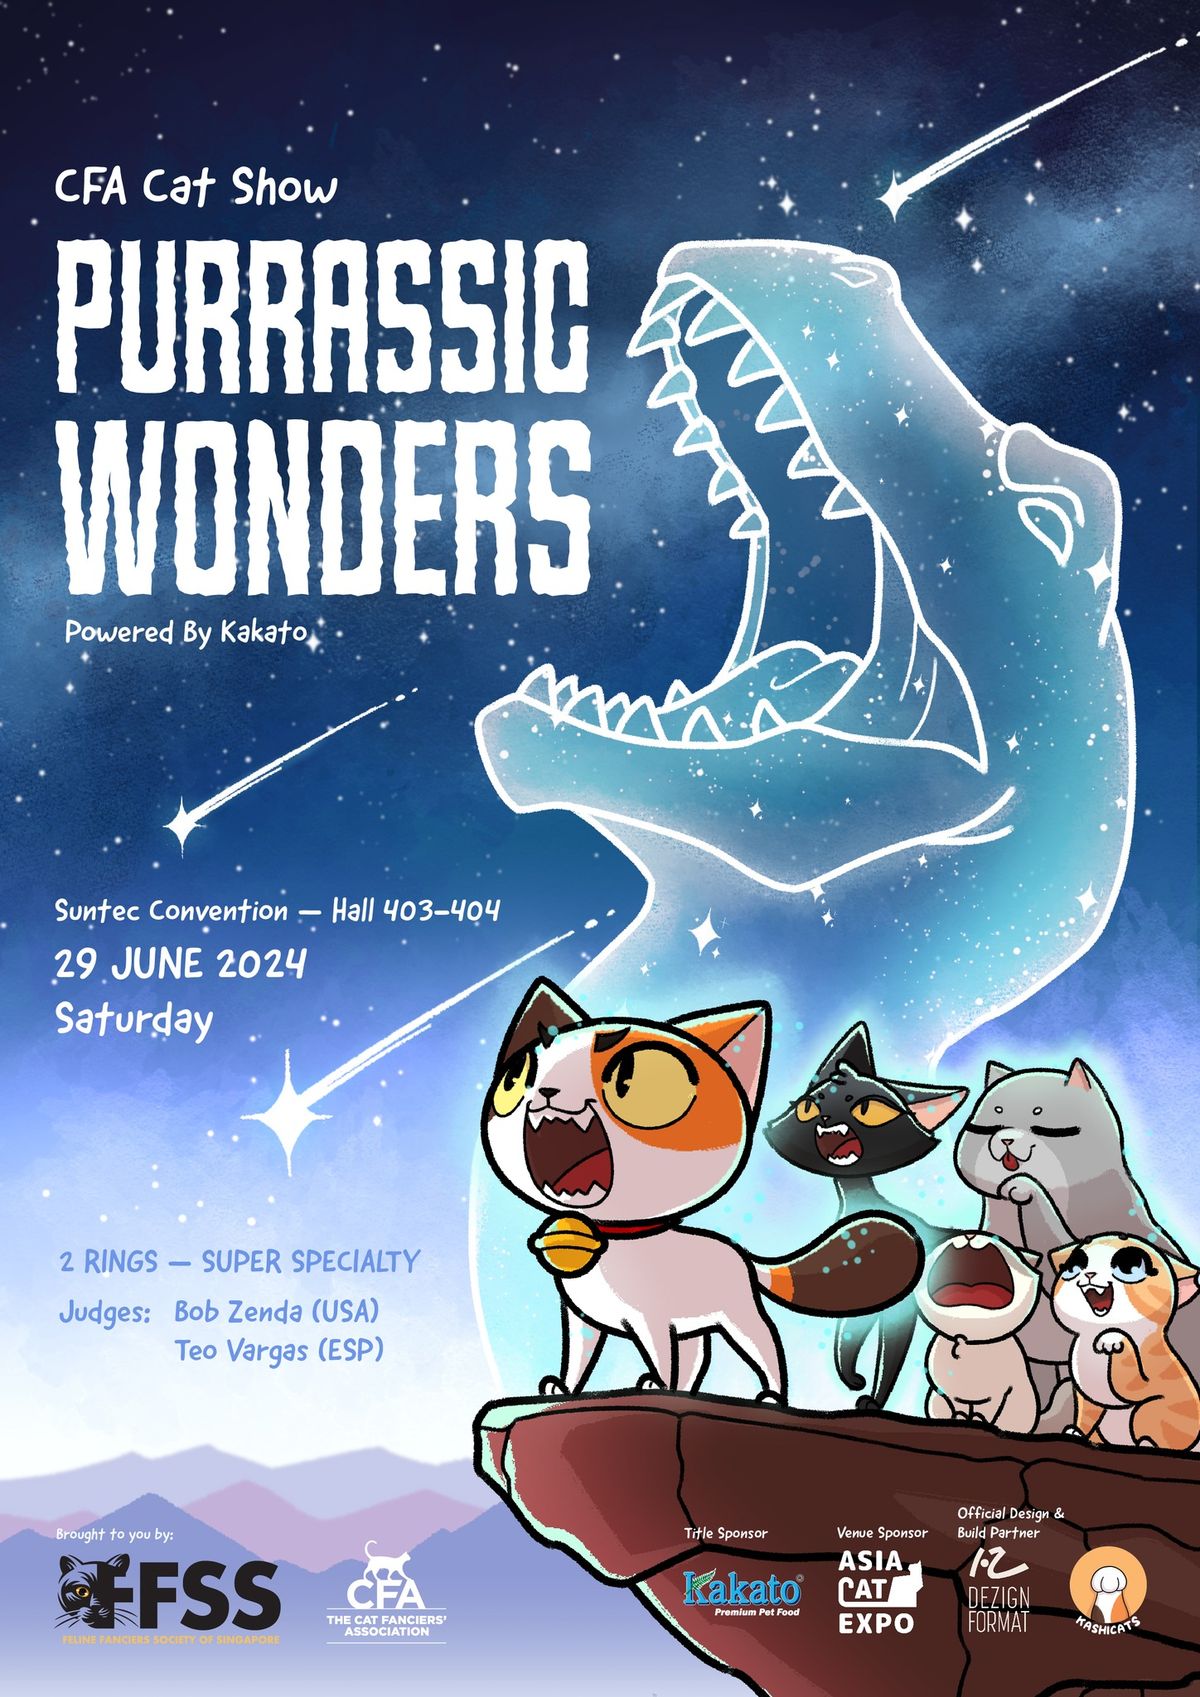 CFA Cat Show - Purrassic Wonders: Powered by Kakato